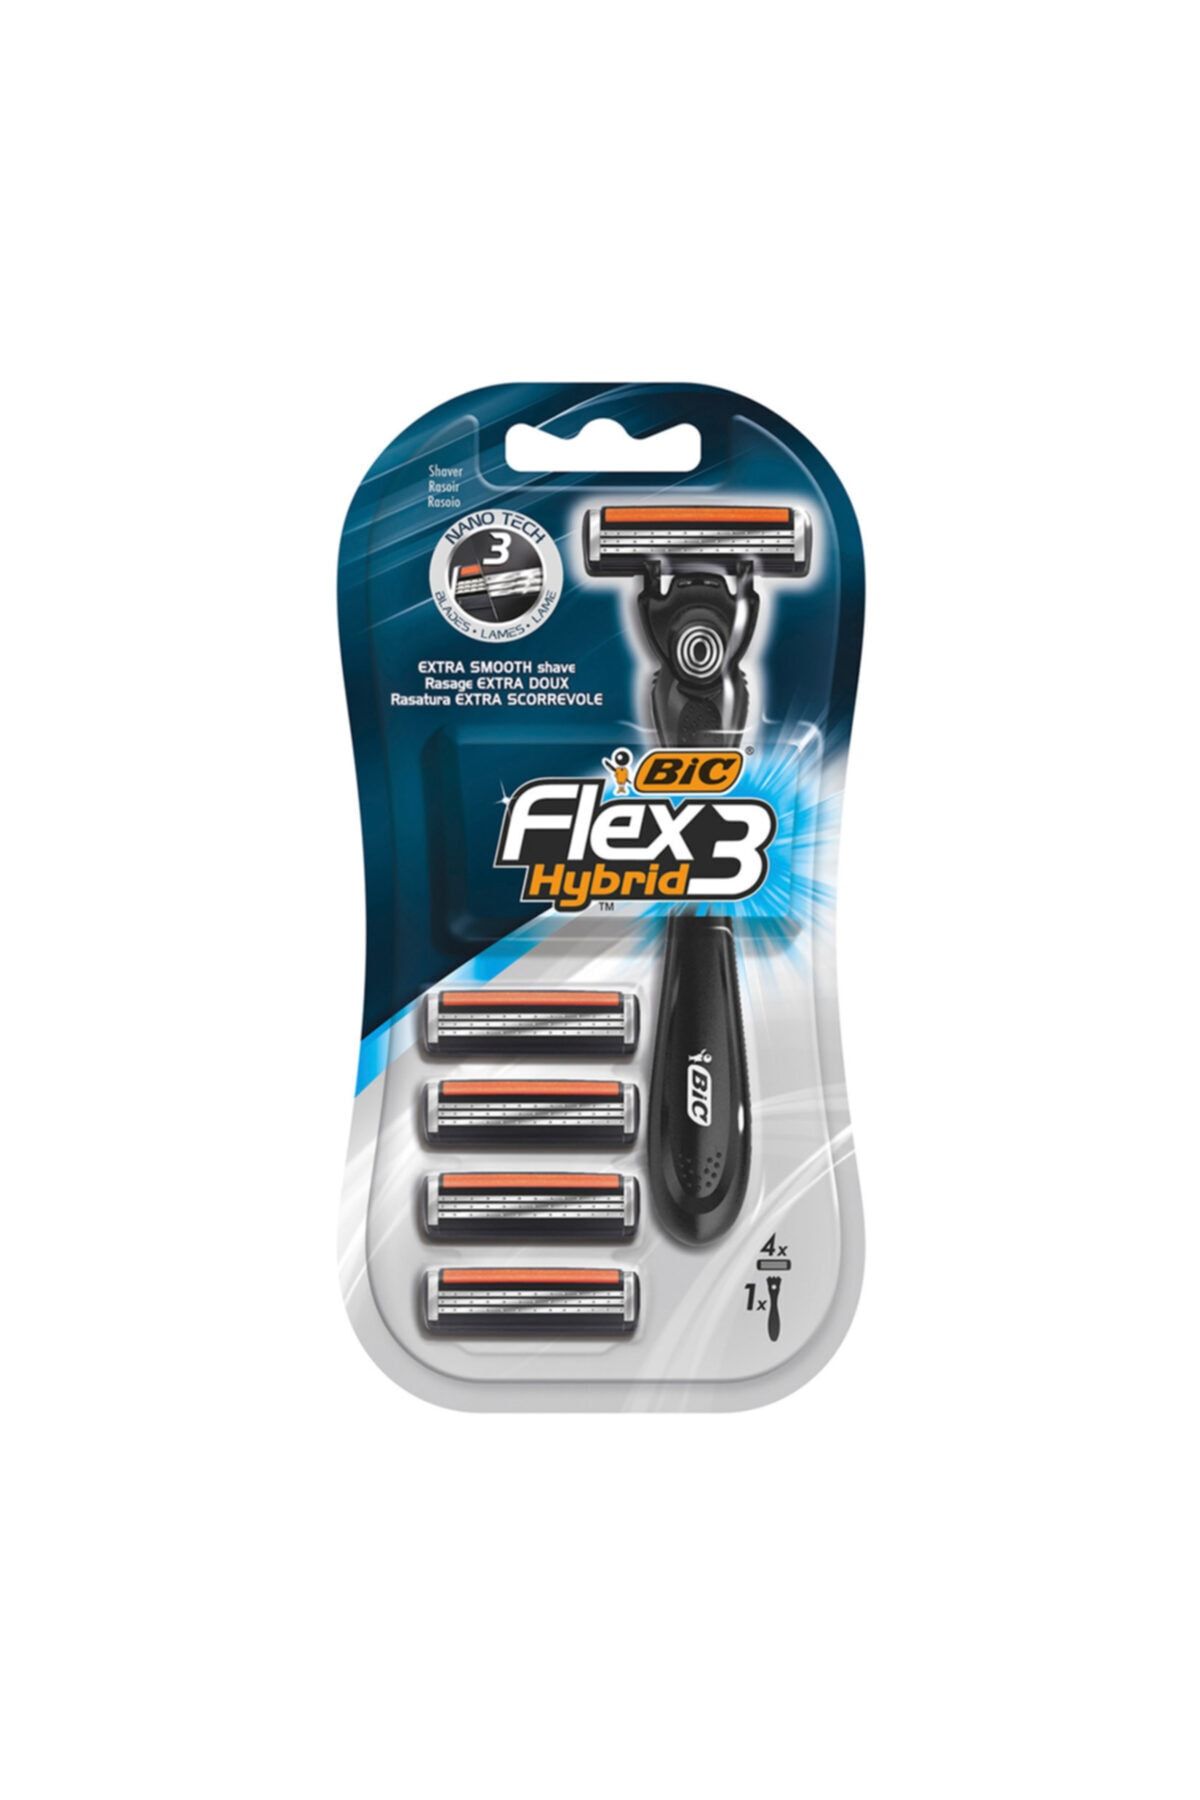 Bic Flex 3 Hybrid  4 Kartuşlu Tıraş Bıçağı